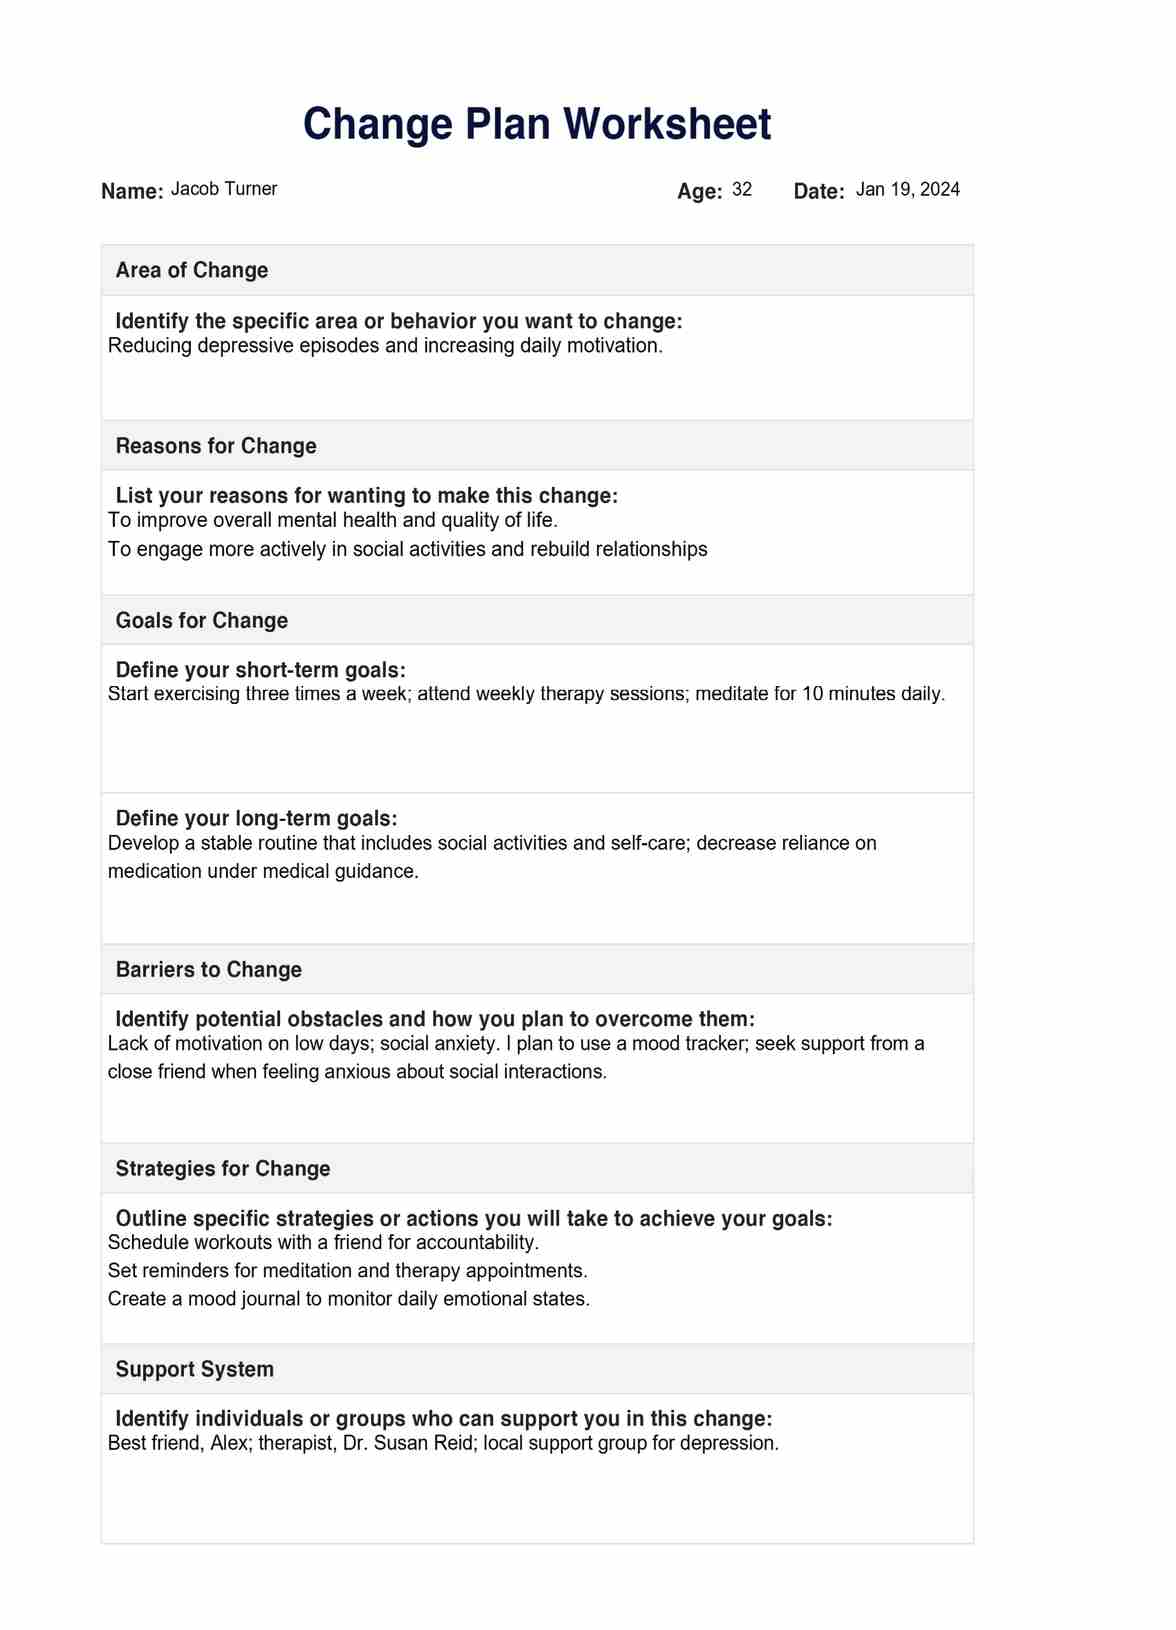 Change Plan Worksheet PDF Example